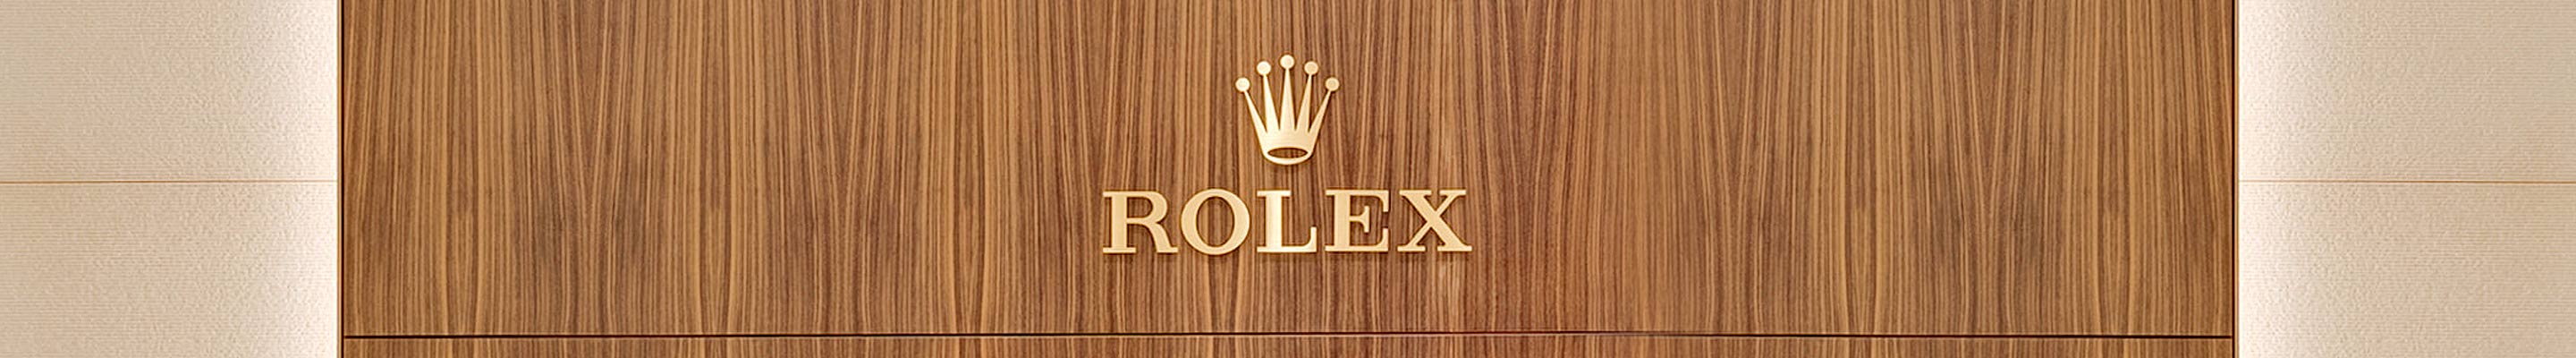 Rolex Contact Us